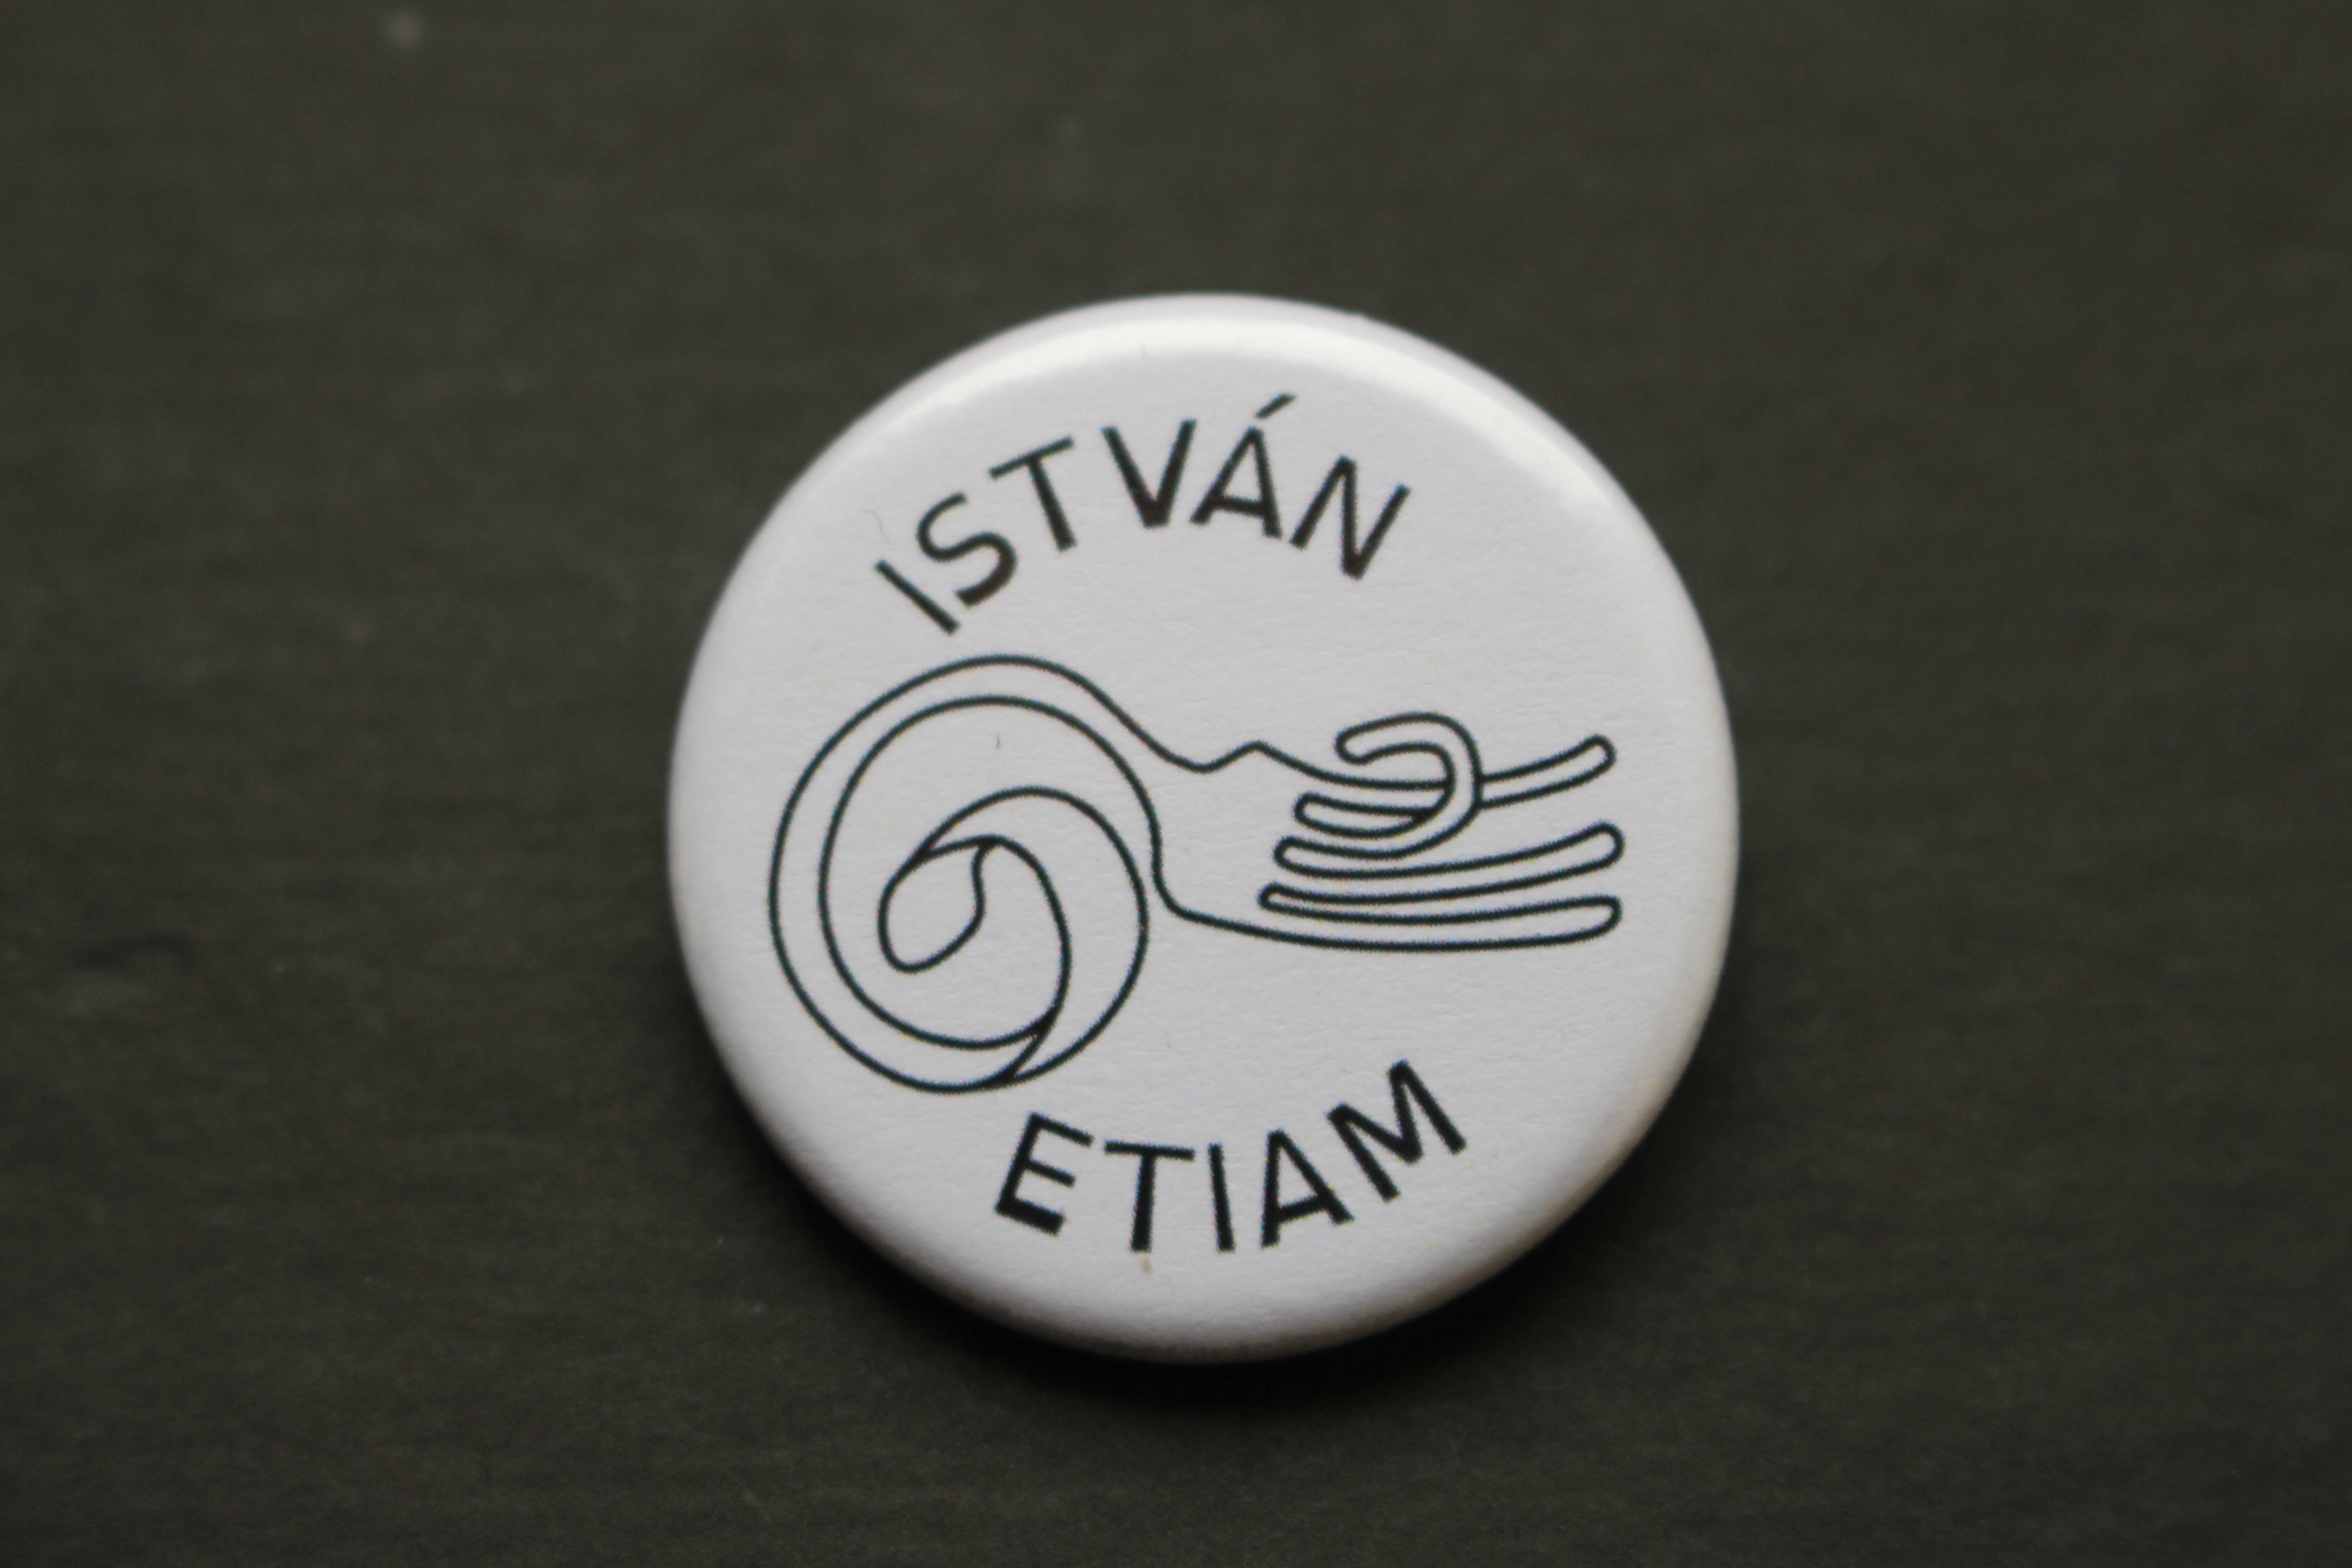 Istvan Etiam Istvan S New Logo Has Arrived Istvan Etiam